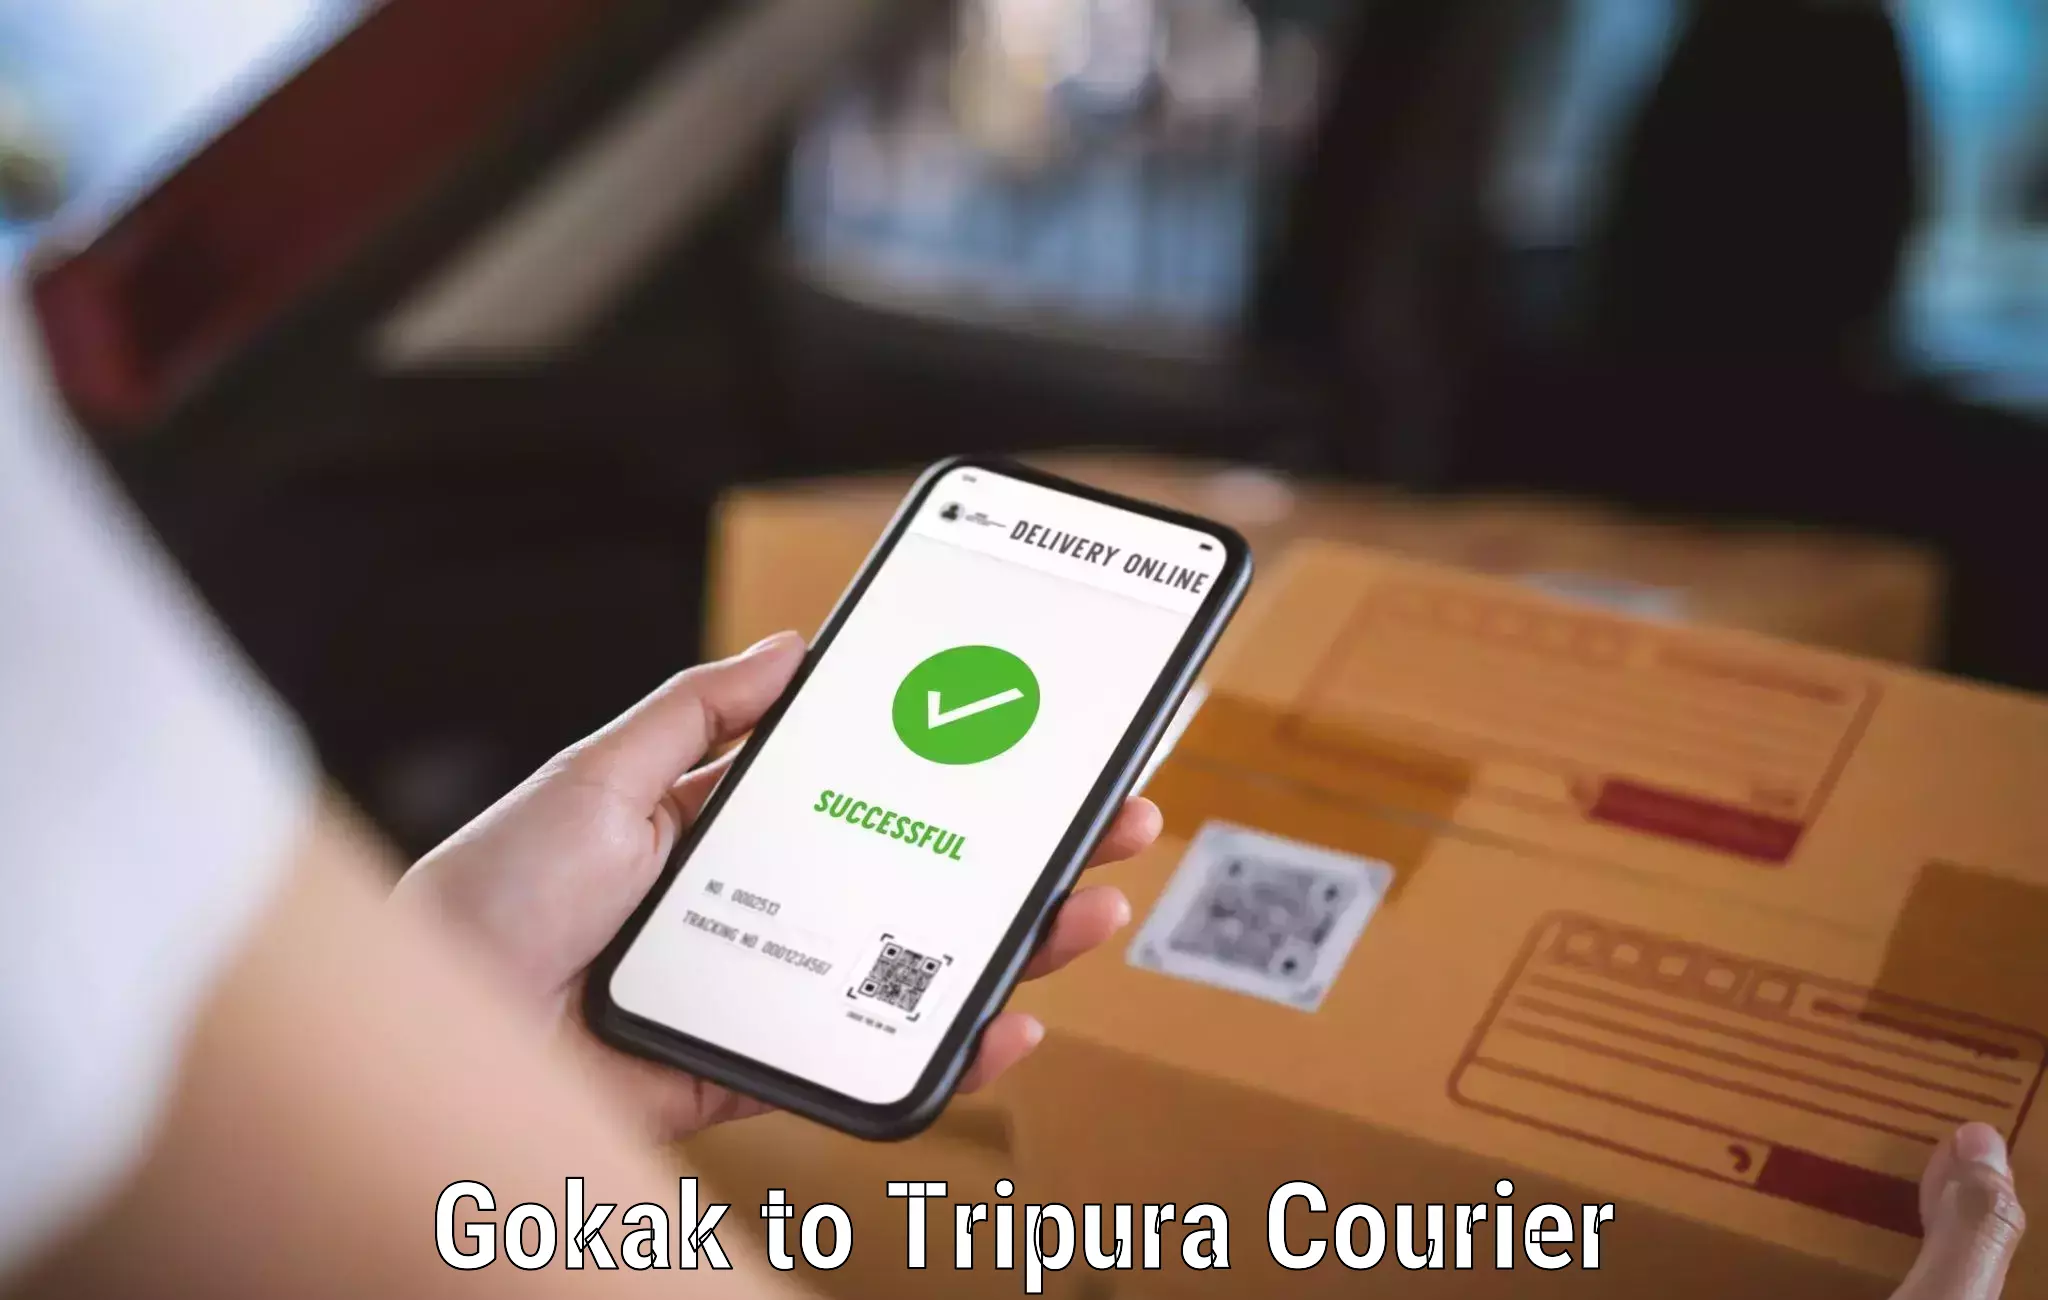 Urgent courier needs Gokak to Tripura